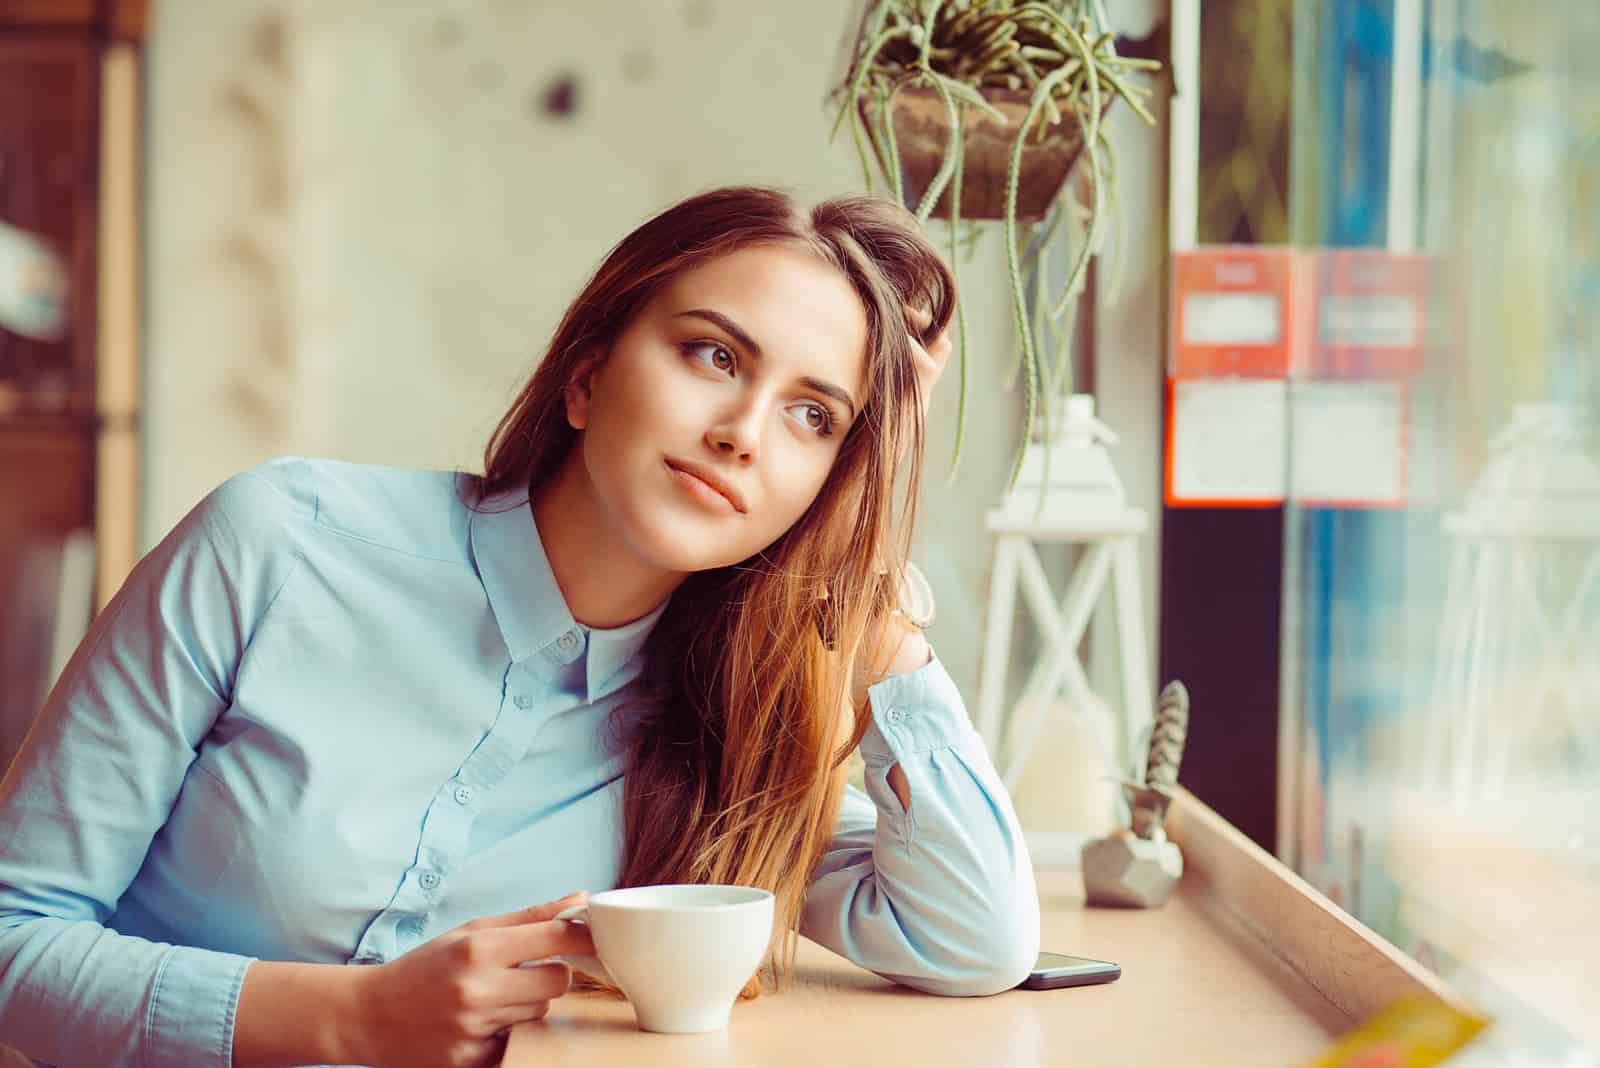 une femme imaginaire est assise et boit du café